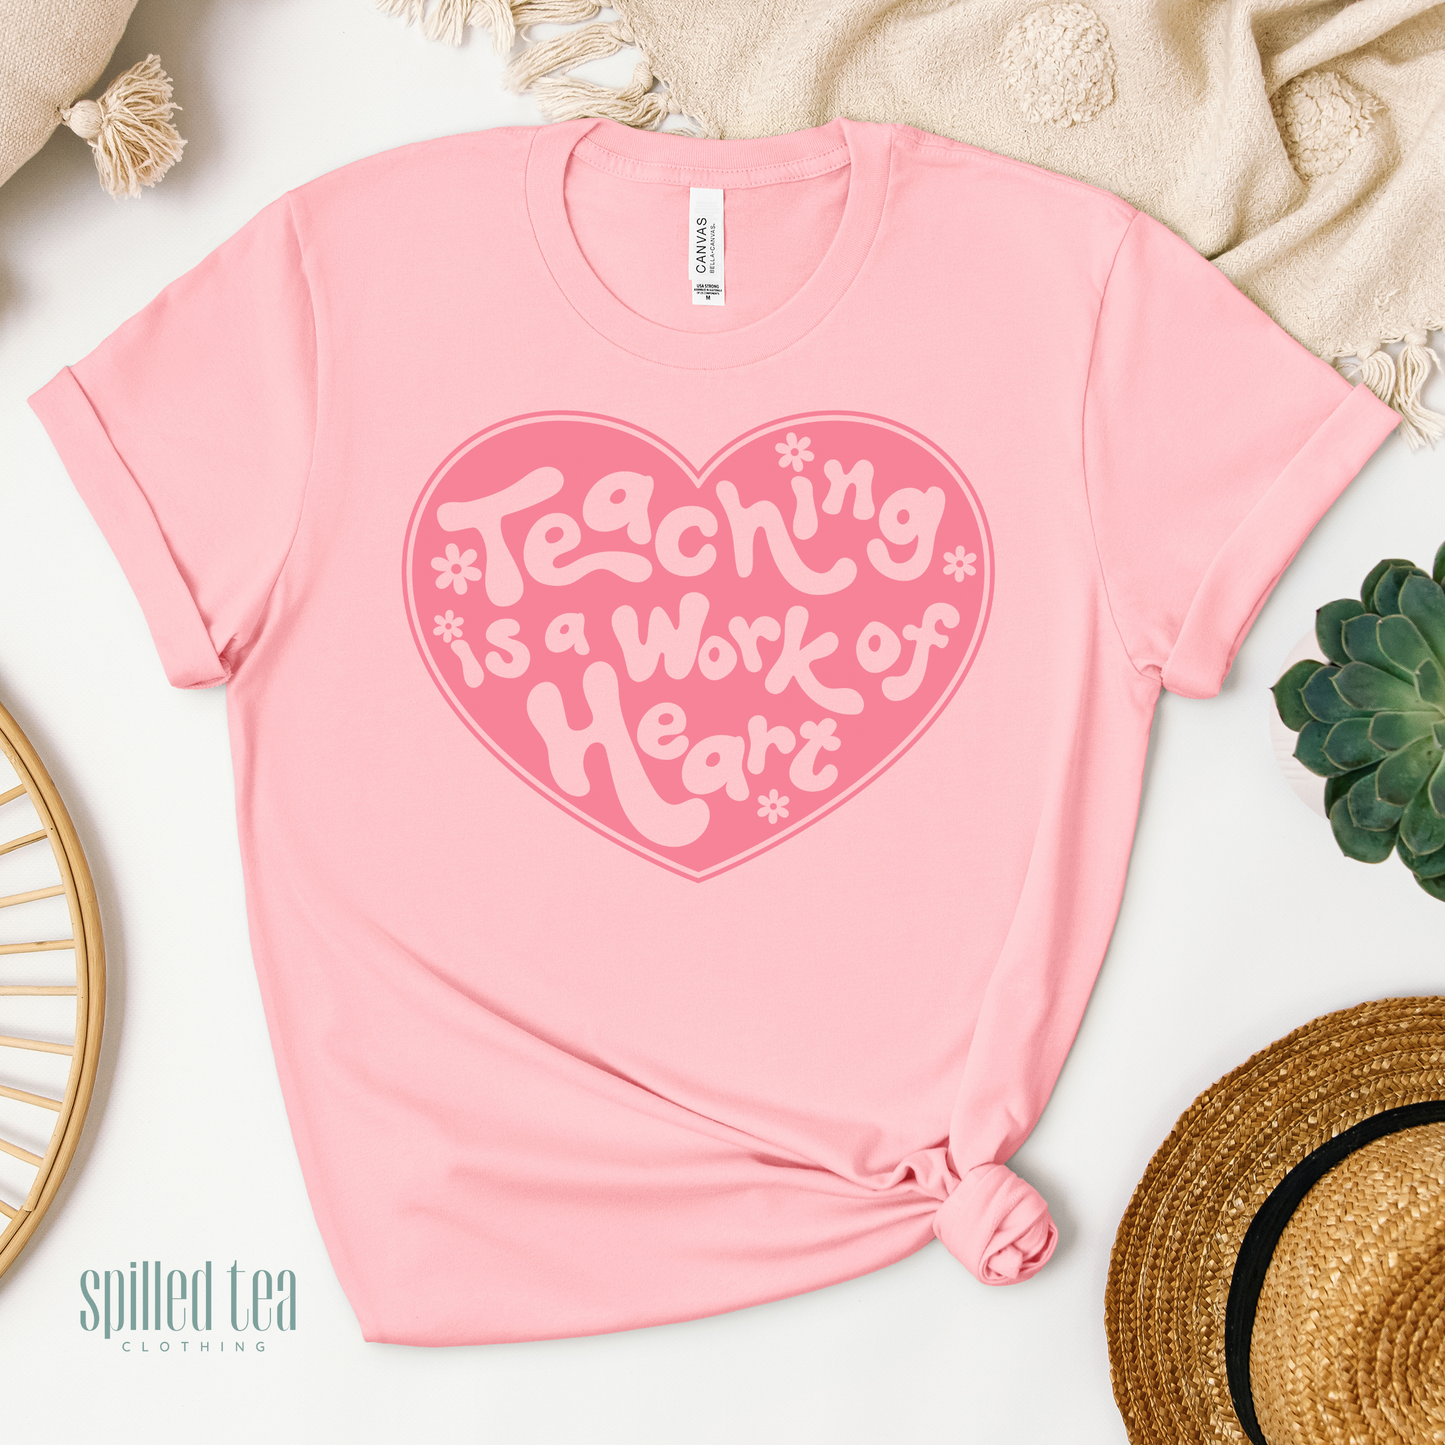 Teaching Is A Work Of Heart T-Shirt